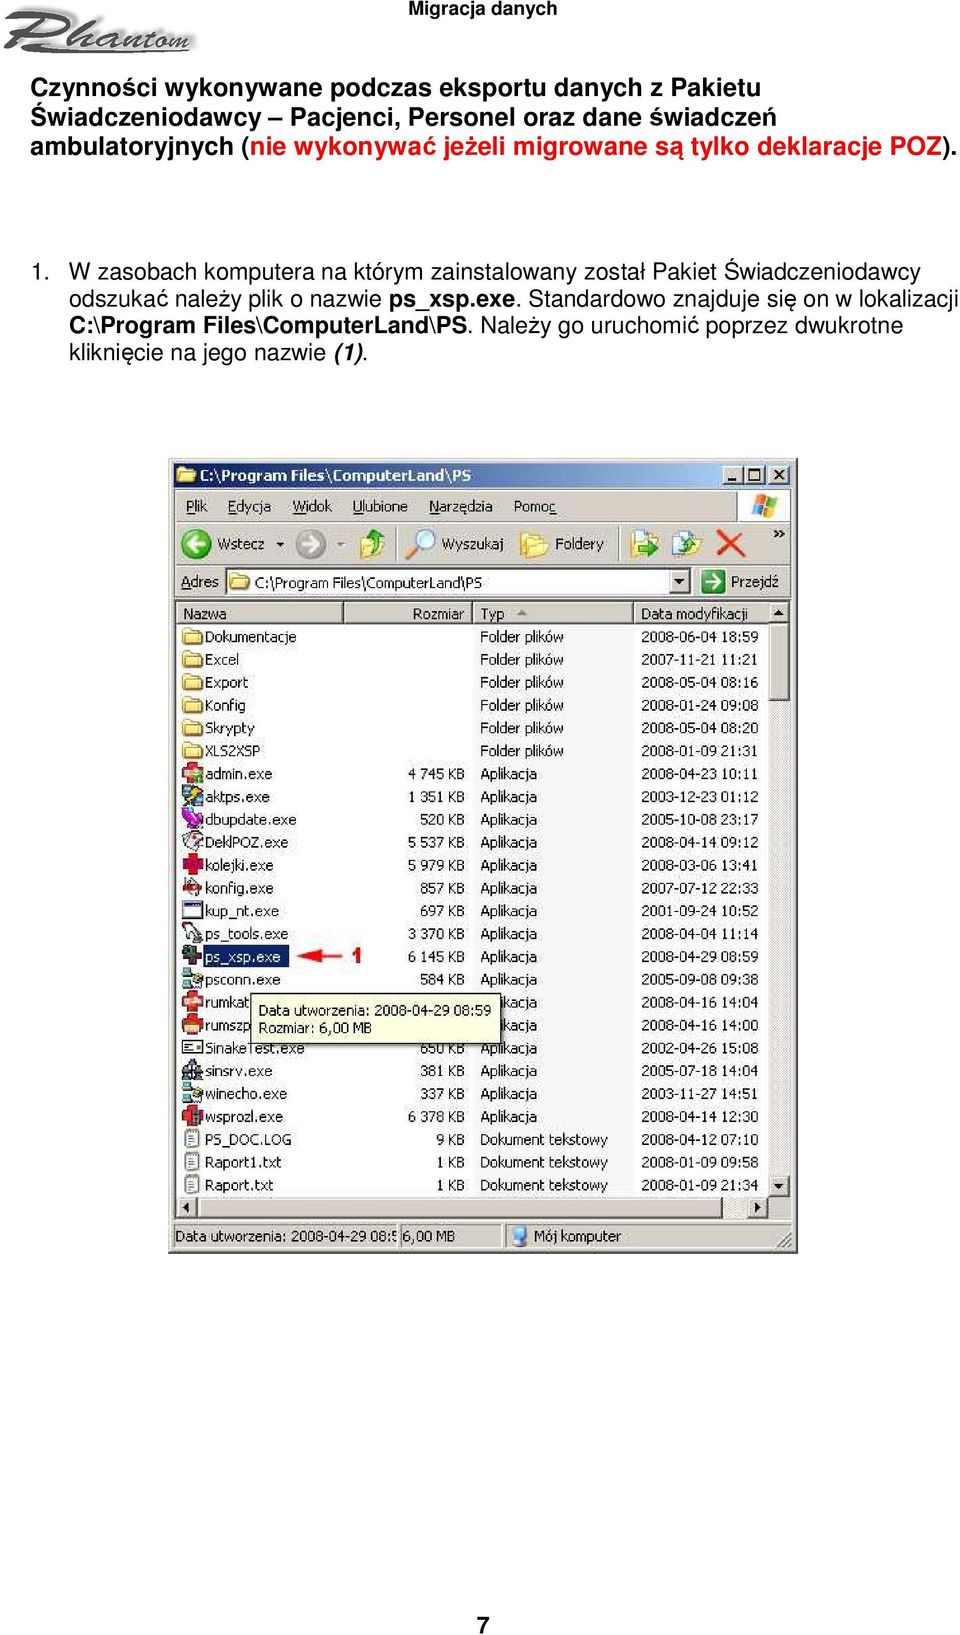 W zasobach komputera na którym zainstalowany został Pakiet Świadczeniodawcy odszukać należy plik o nazwie ps_xsp.